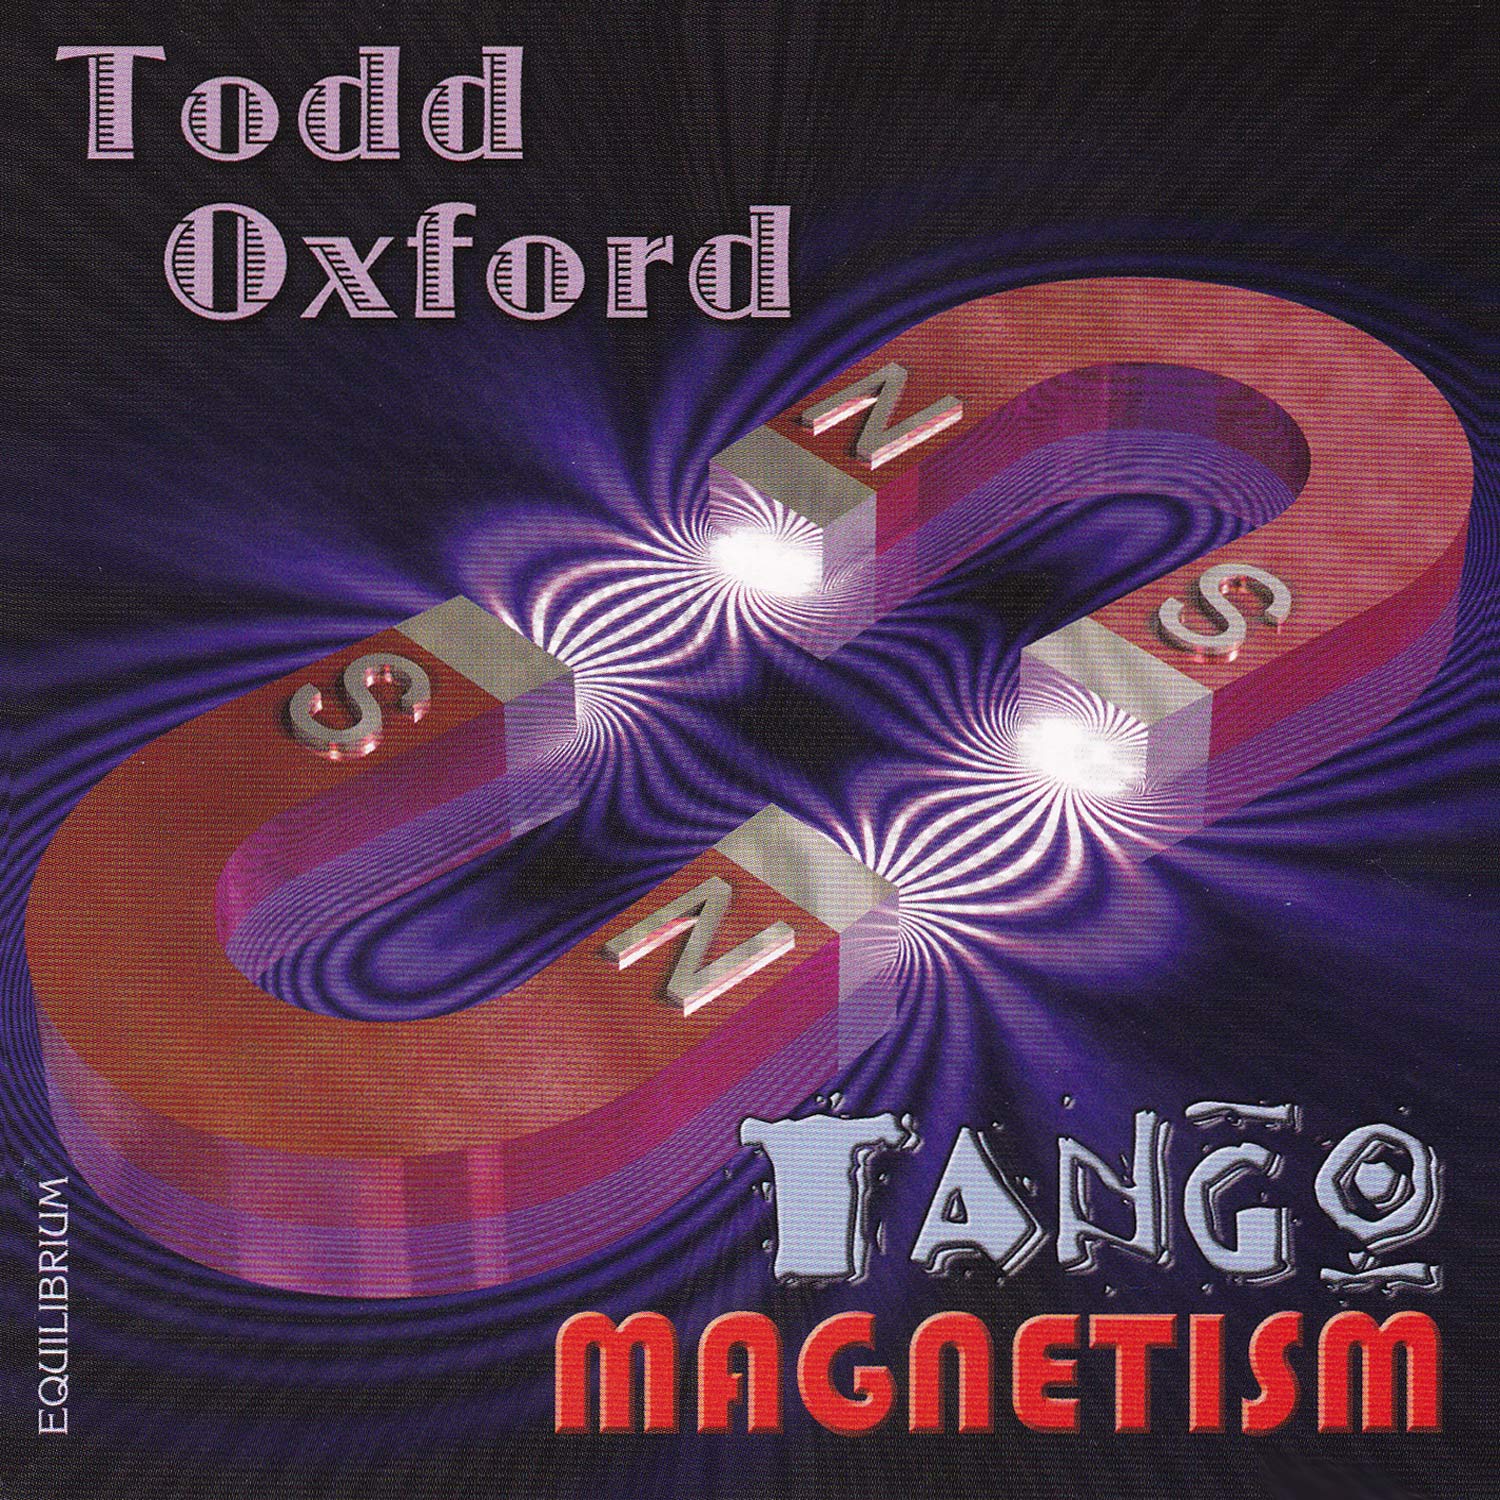 Tango Magnetism